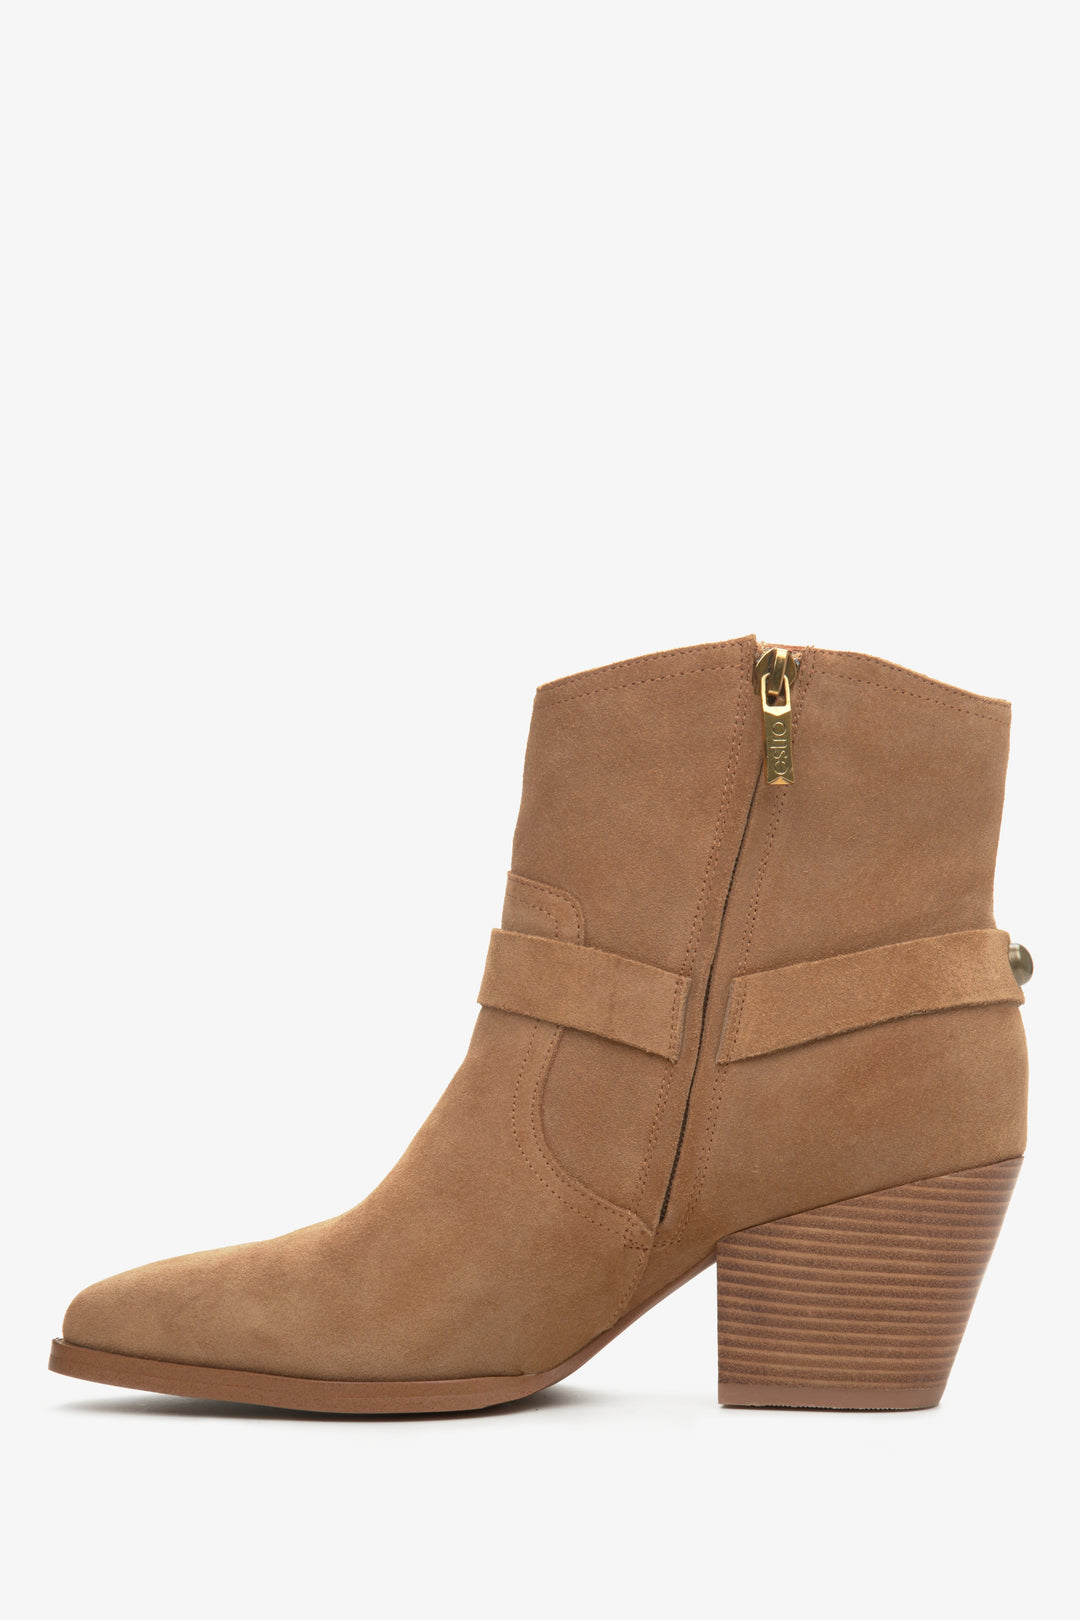 Women's low top brown cowboy boots by Estro - shoe profile.